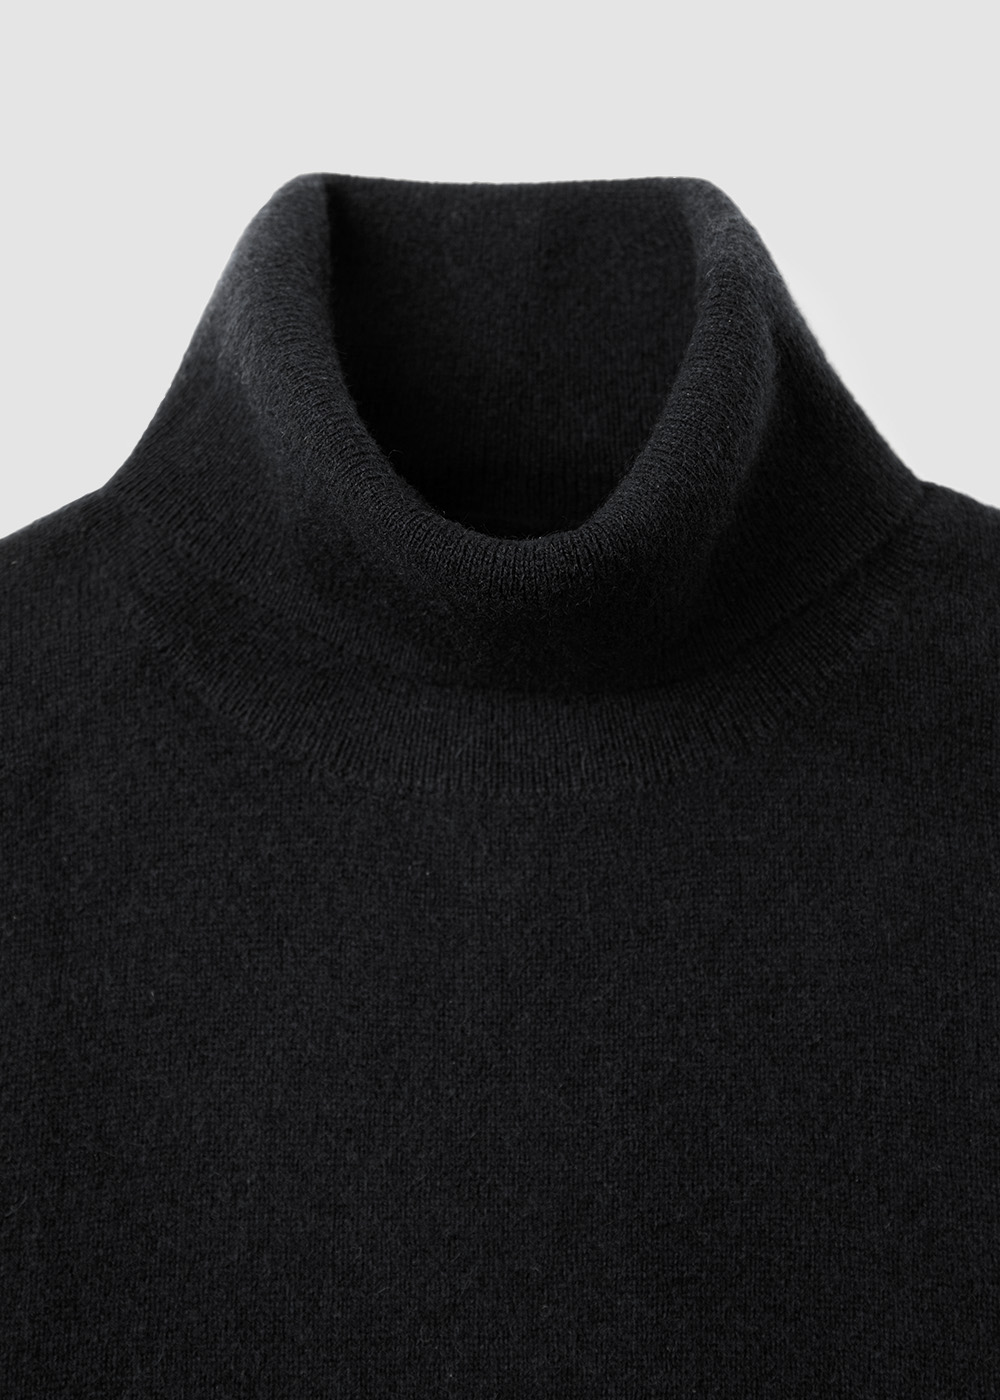 Cashmere 100% Turtleneck Knit _ black